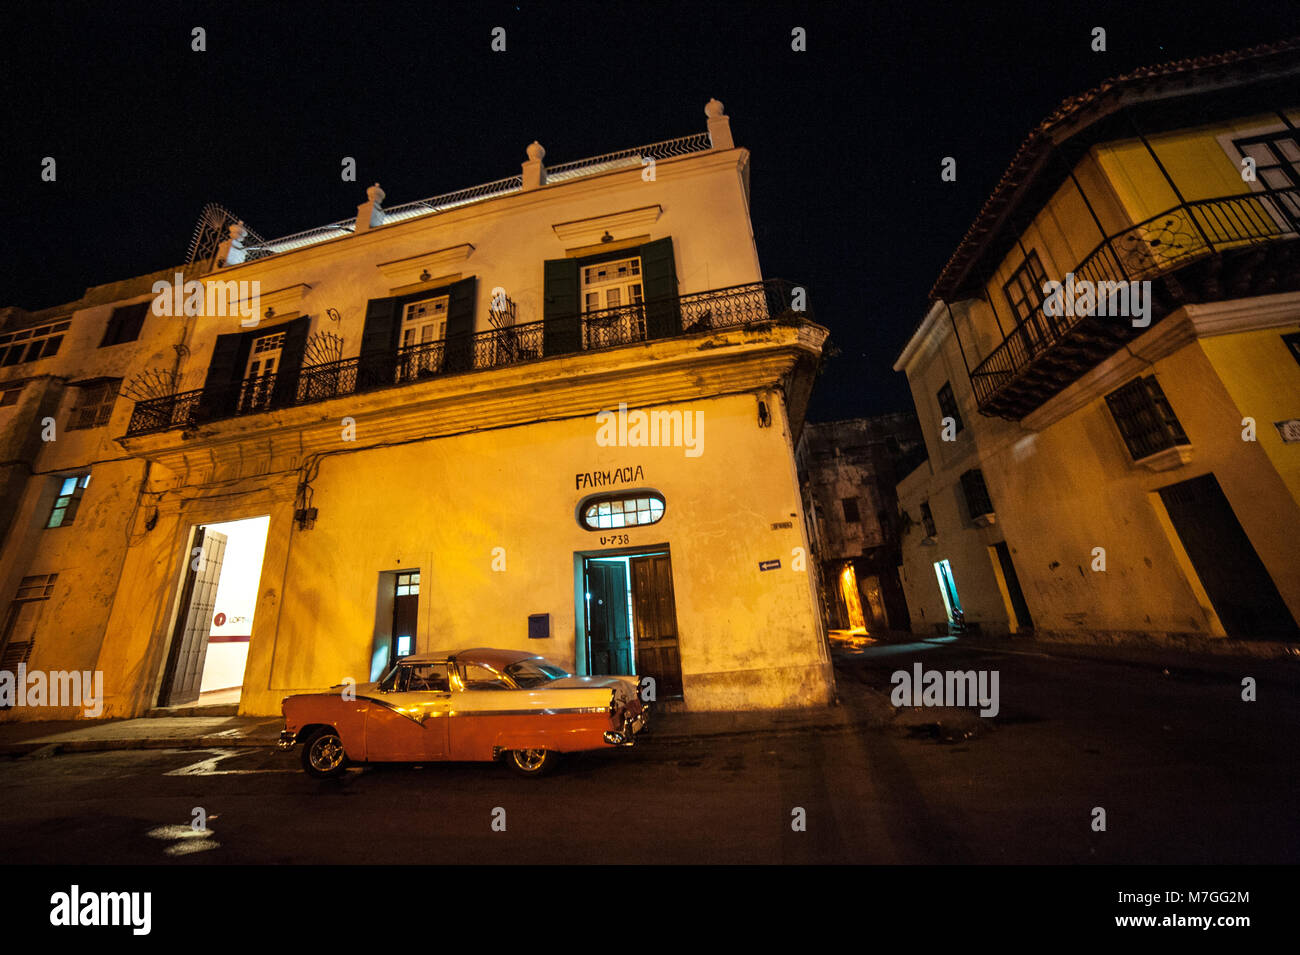 Un classico americano auto parcheggiate fuori una farmacia a l'Avana, Cuba, a notte Foto Stock